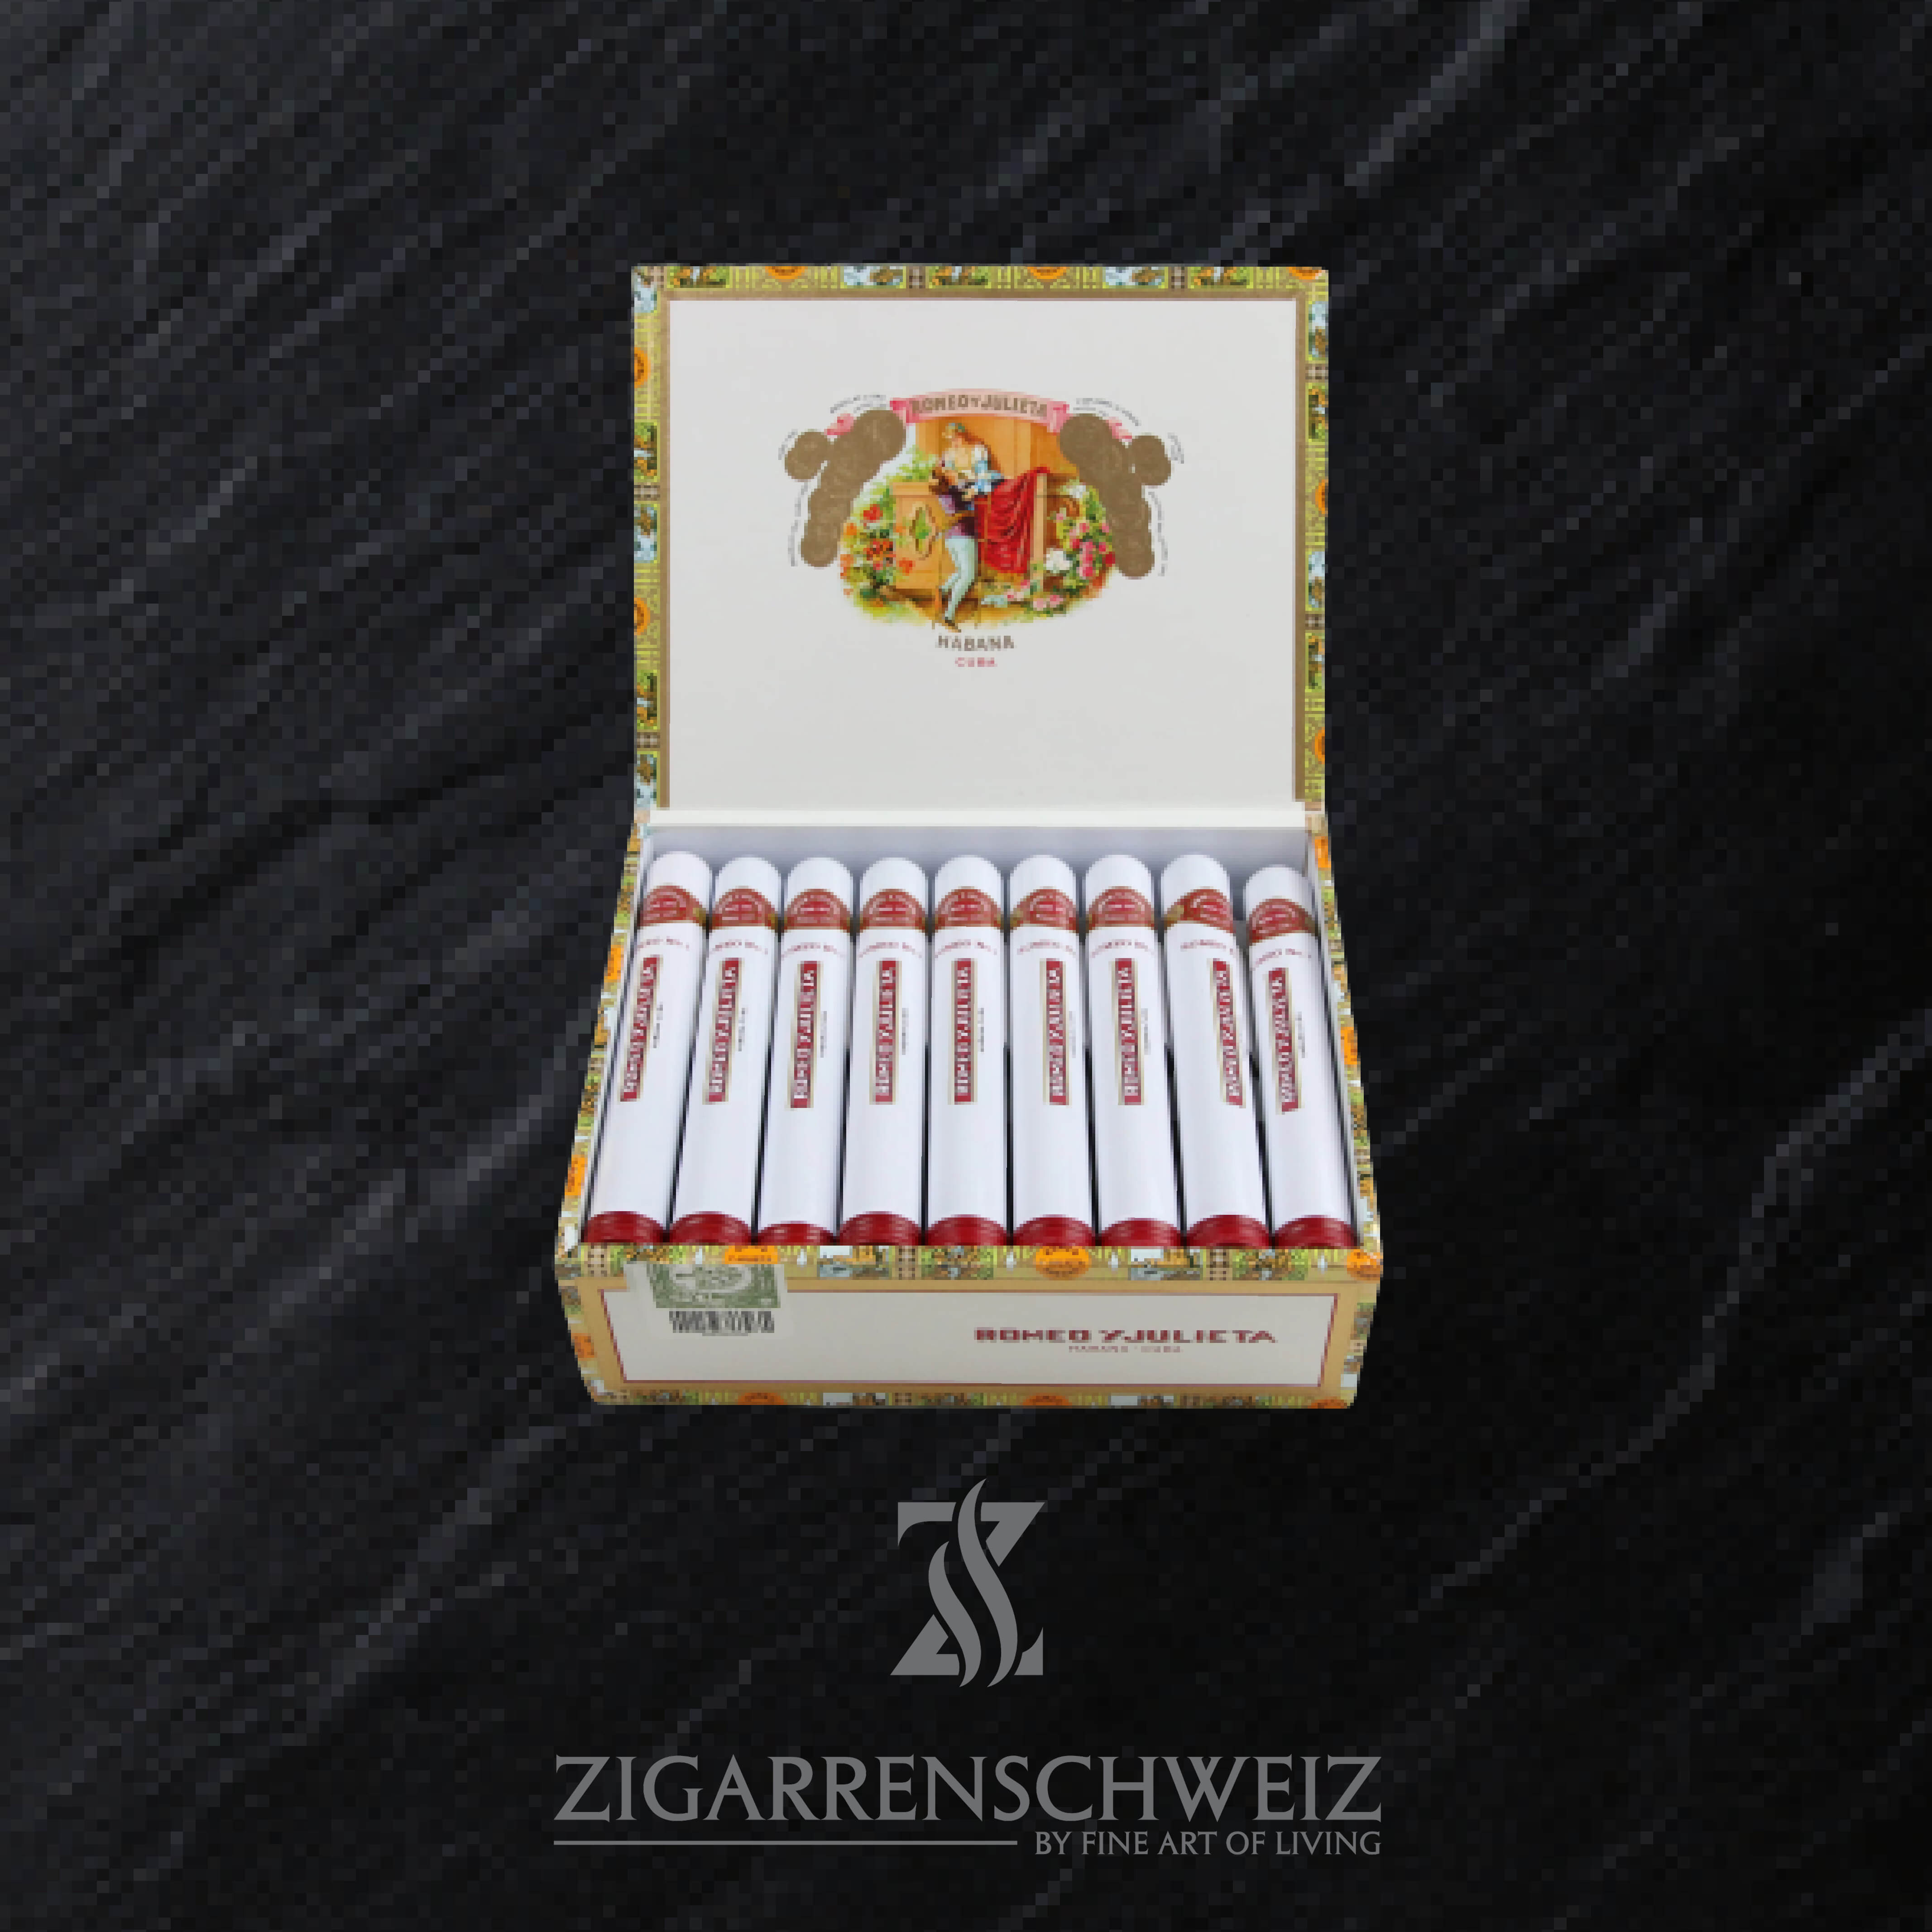 25er Kiste Romeo y Julieta No. 1 Tubo Zigarren aus Kuba